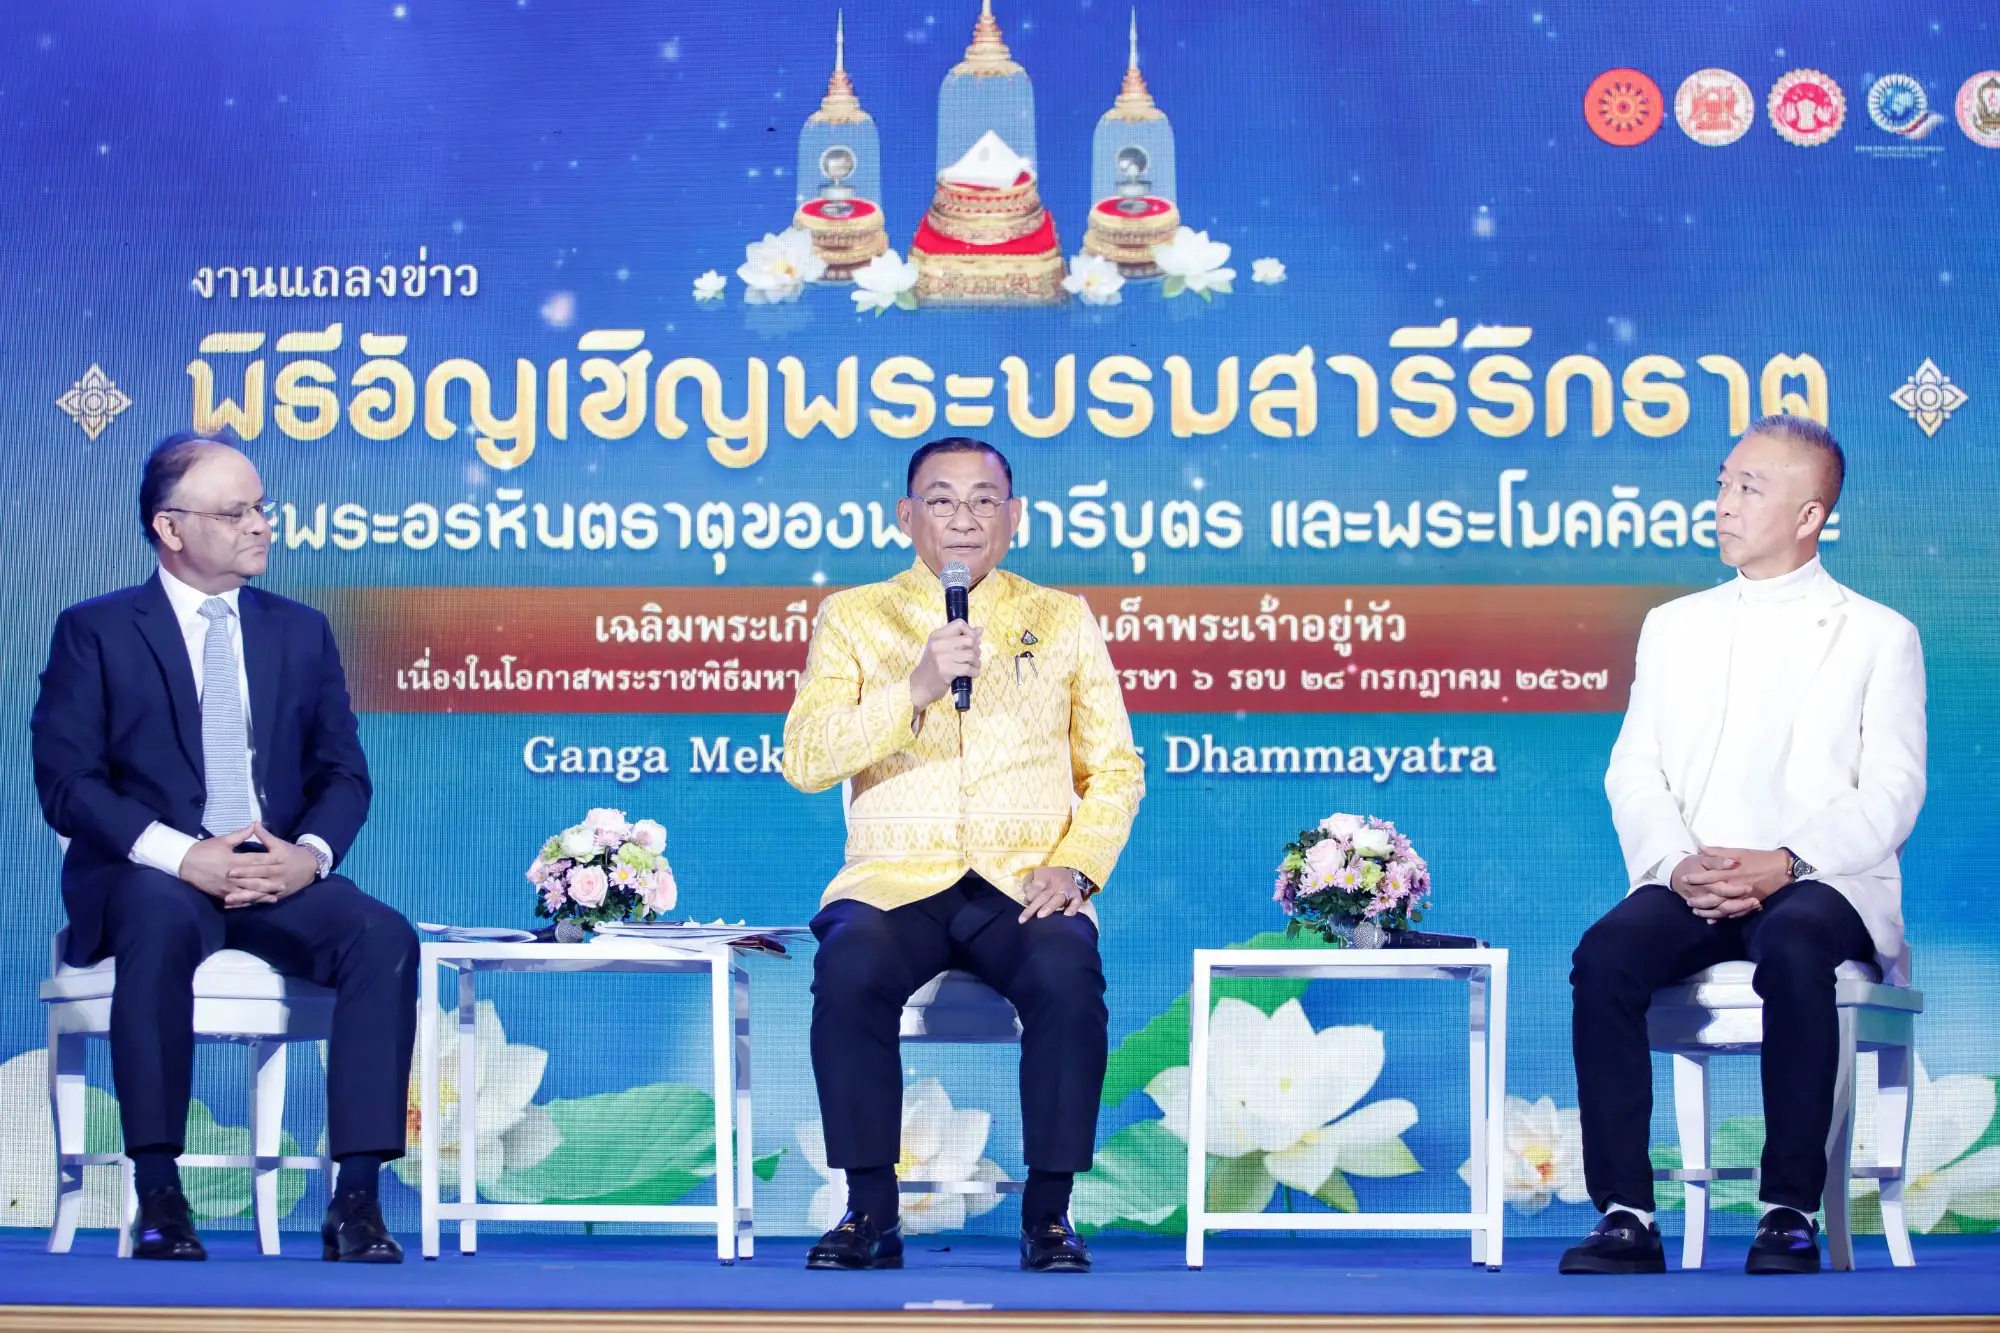 泰國文化部長森薩空帕尼、印度駐泰國大使Nagesh Singh、菩提伽耶維伽拉亞980學院代表Supachai Veerapuchong以及泰國宗教事務部總監等高層皆出席（圖片來源：看見泰國）